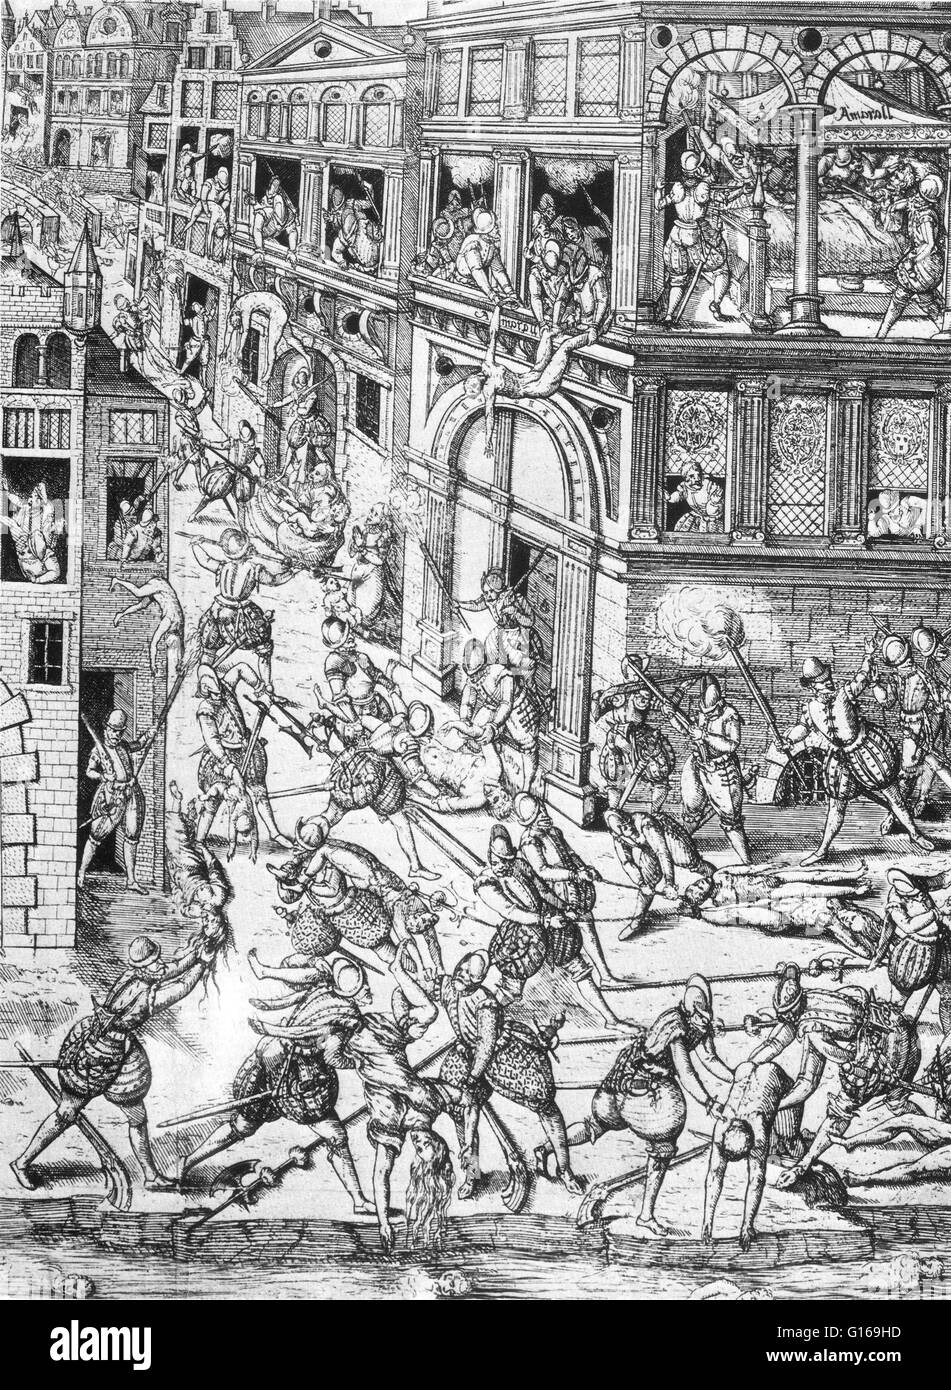 La Masacre del Día de San Bartolomé en 1572 era un grupo objetivo de asesinatos, seguido por una ola de violencia callejera Católica Romana, ambos dirigidos contra los Hugonotes franceses, durante las guerras de religión. Tradicionalmente se cree que han sido instigados b Foto de stock